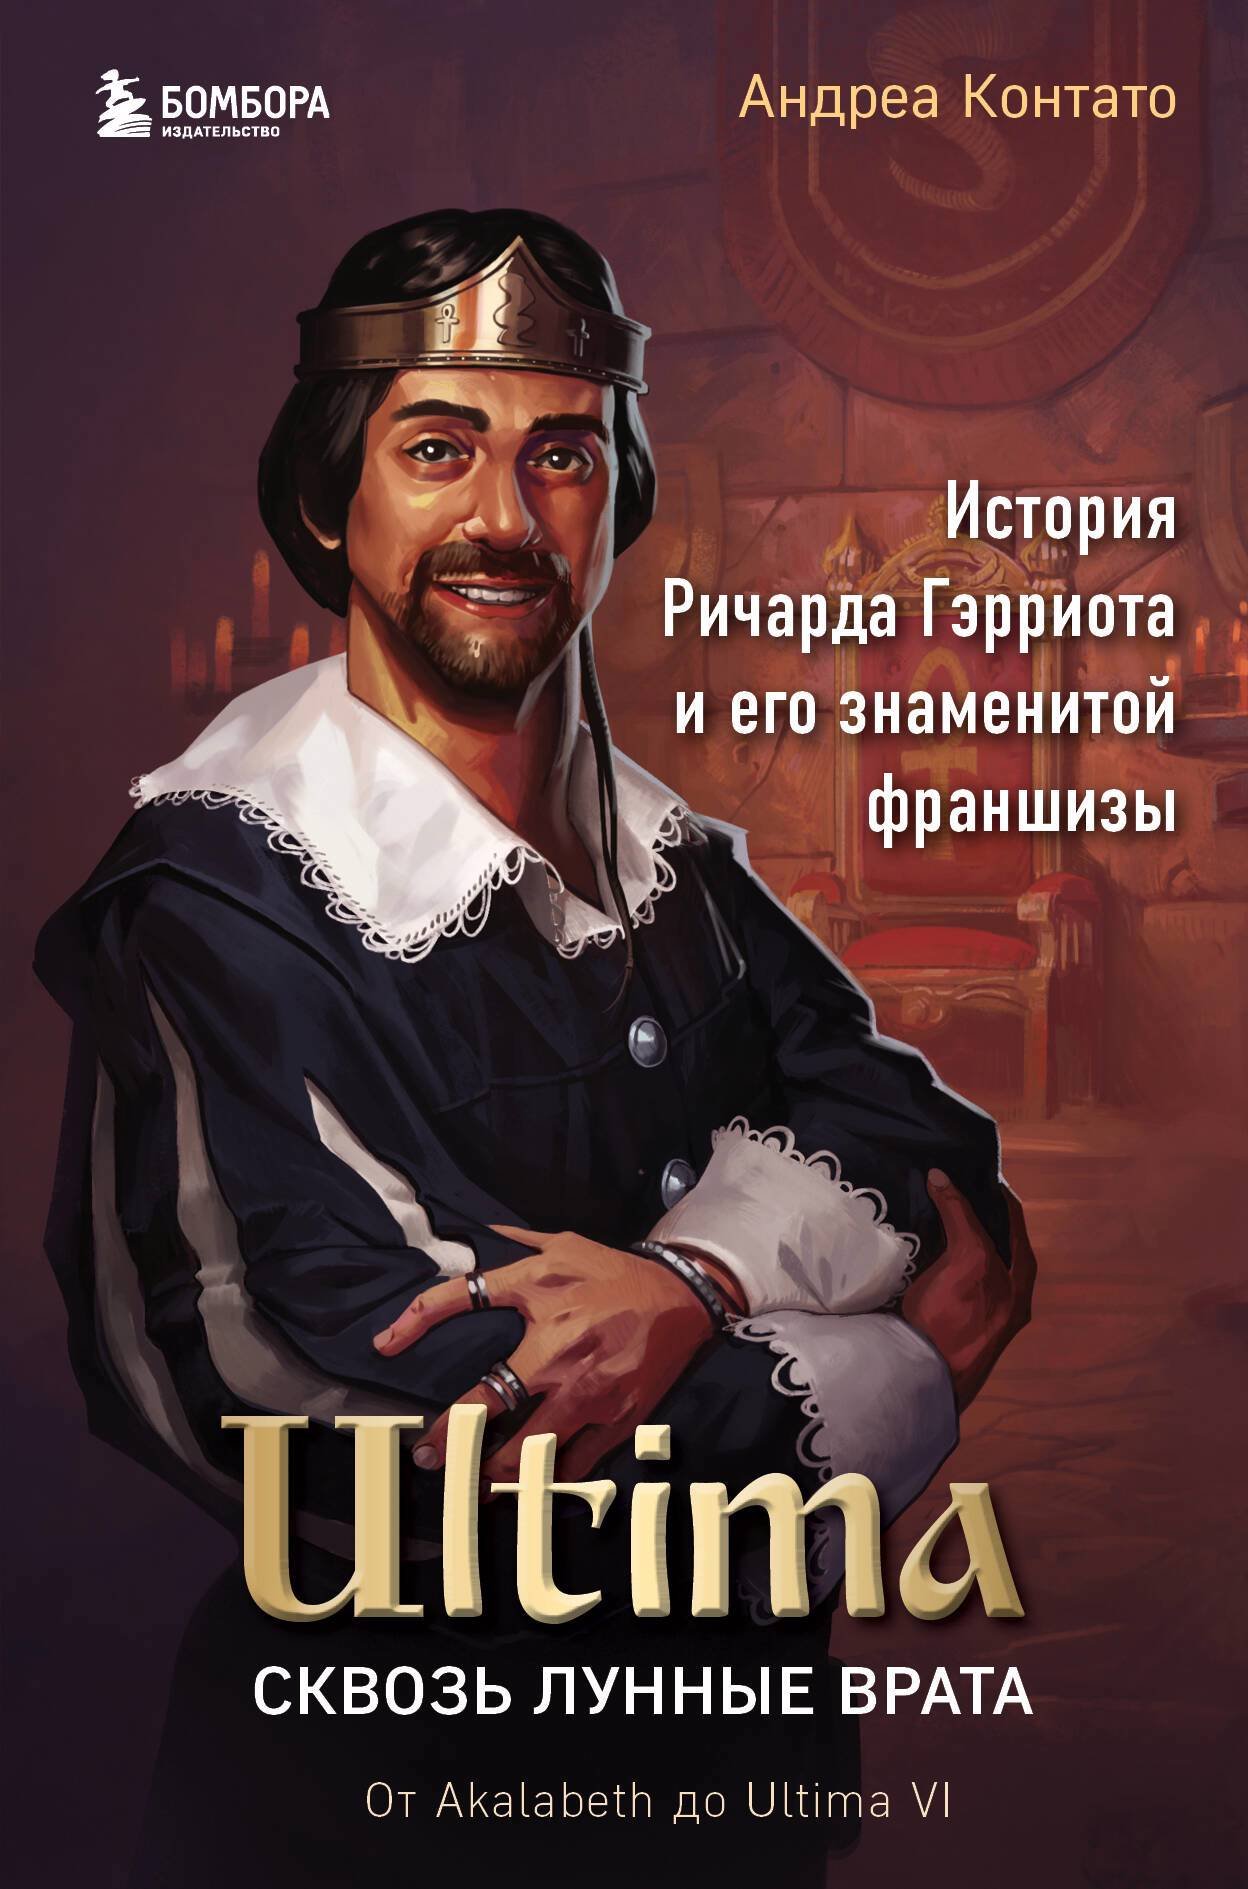 Контато Андреа - Ultima: сквозь Лунные Врата. История Ричарда Гэрриота и его знаменитой франшизы